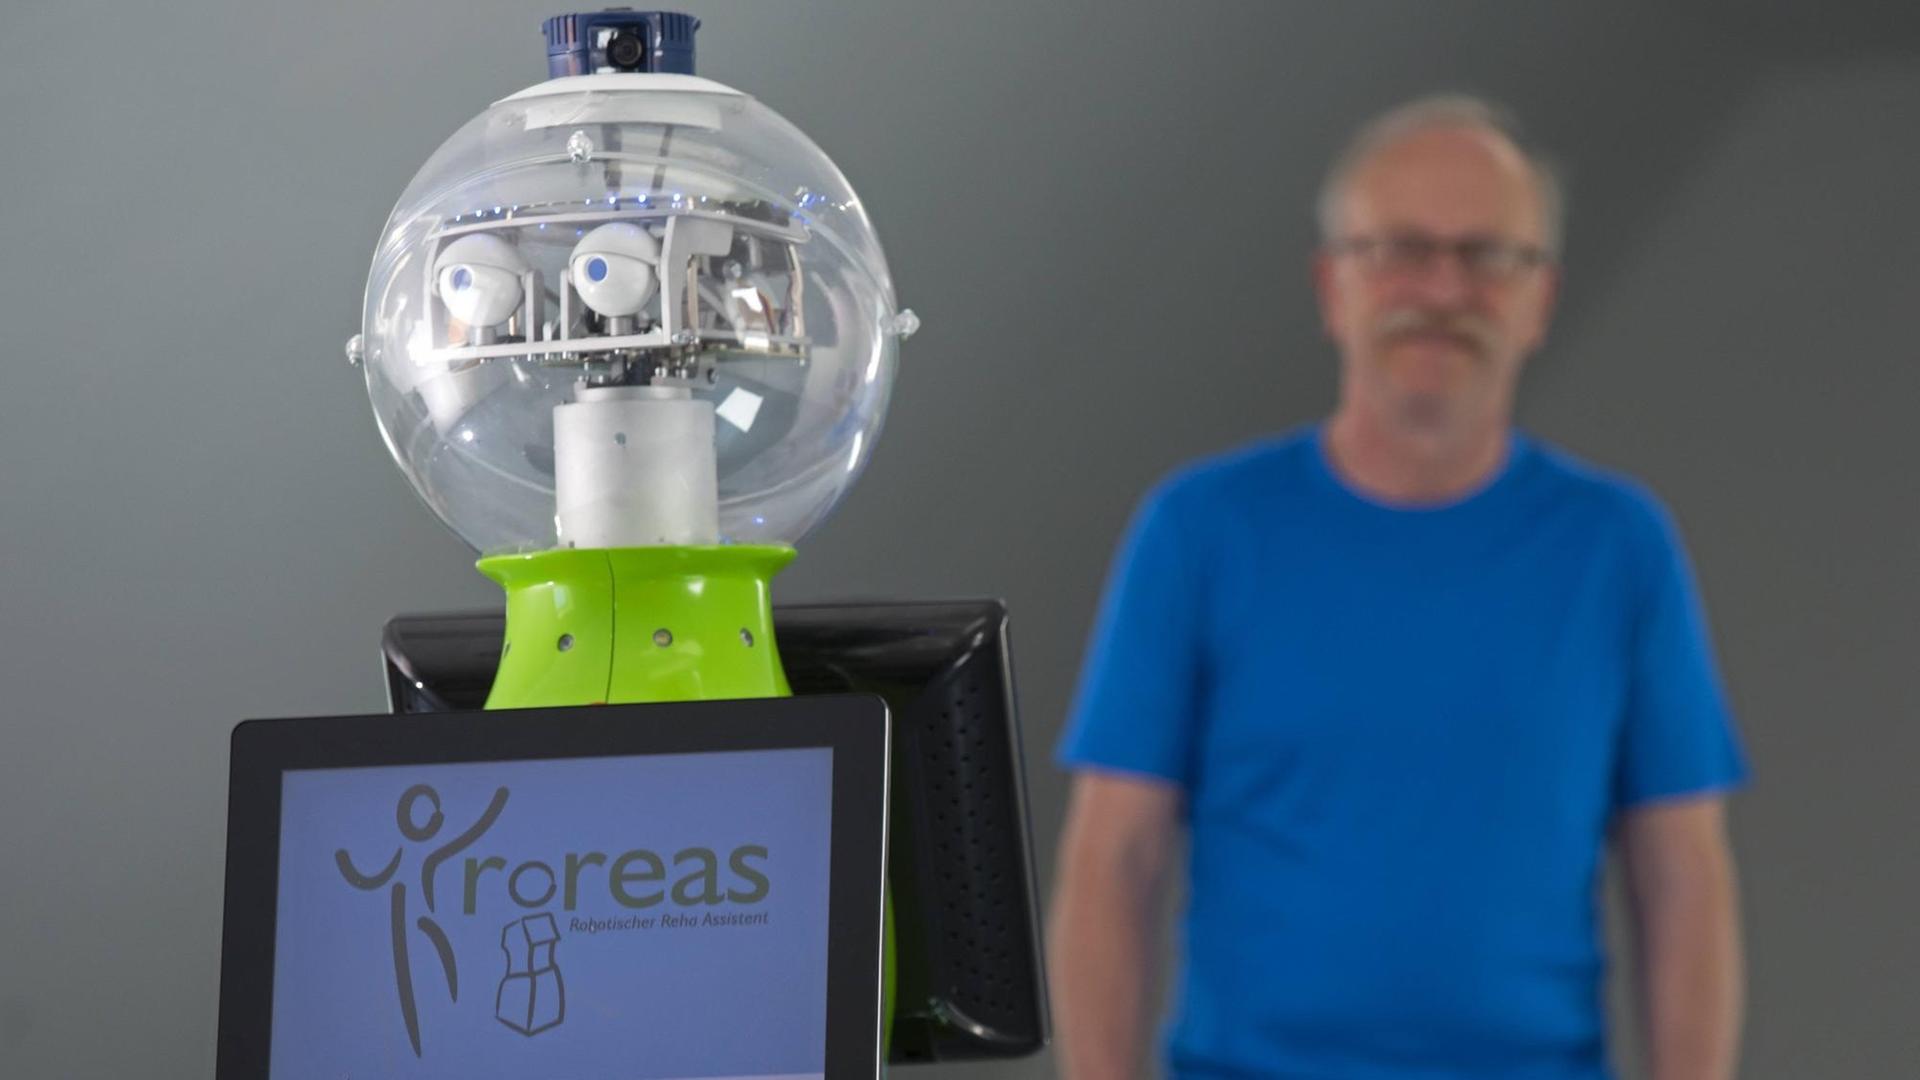 Klaus Debes, wissenschaftlicher Mitarbeiter an der TU Erfurt, präsentiert den sprechenden Reha-Roboter Roreas, der Schlaganfall-Patienten helfen soll, wieder auf auf die Beine zu kommen.